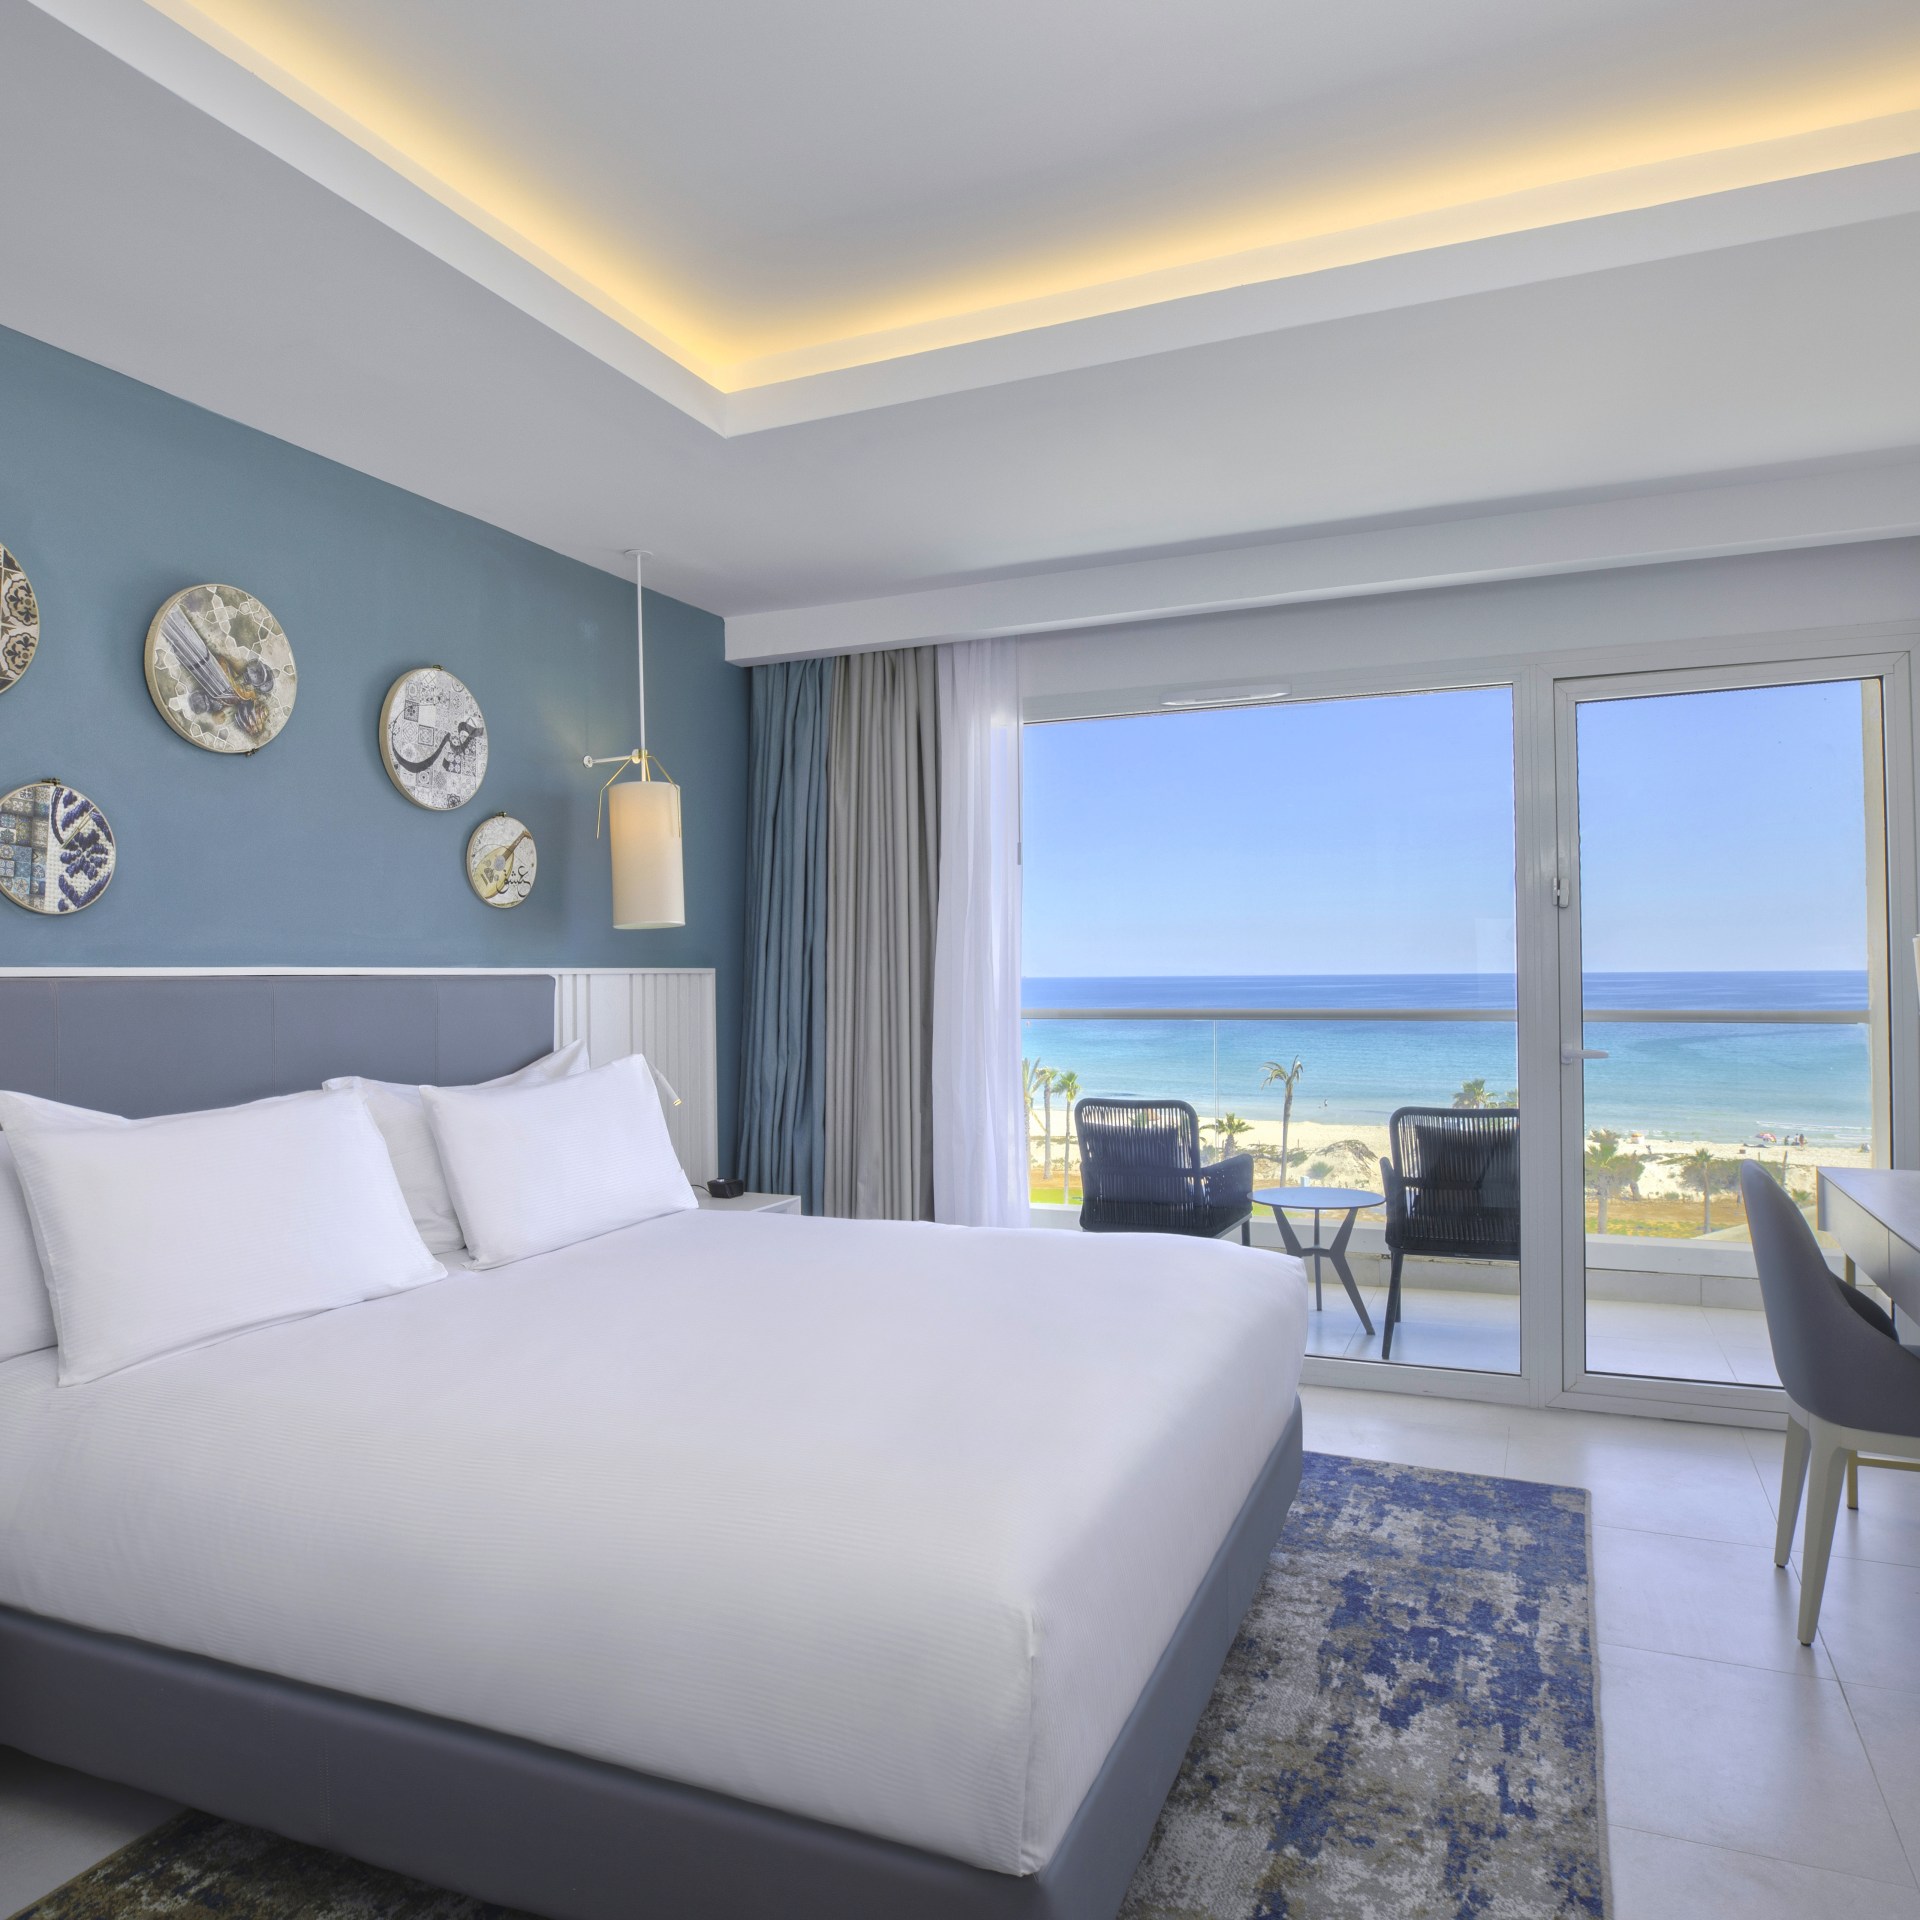 Hilton Skanes Monastir Beach Resort - Guest Room